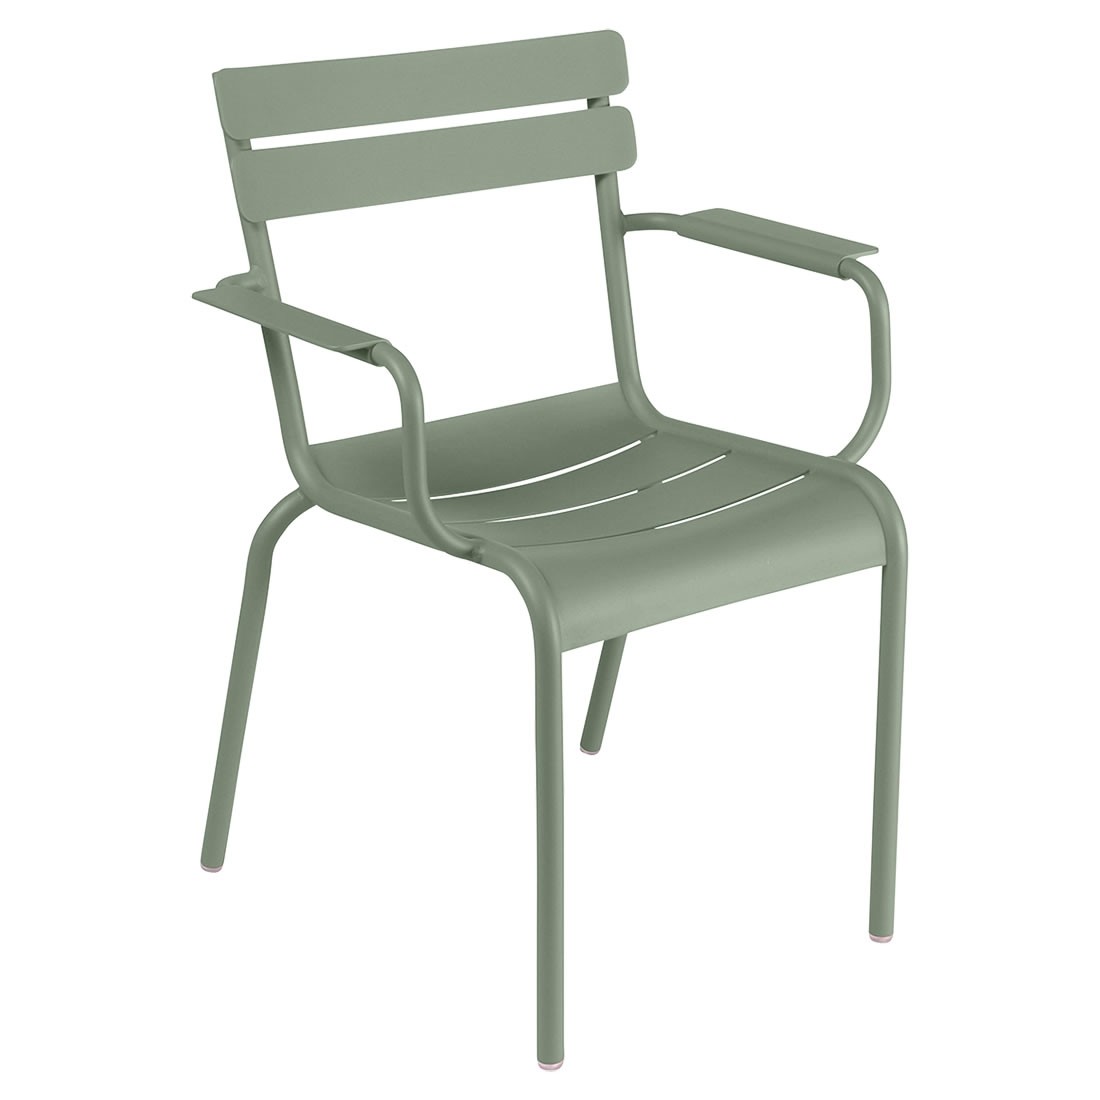 Fermob Sessel Luxembourg. Ein federleichter, stapelbarer Sessel aus Aluminium mit Armlehnen, für Ihren Garten, Balkon oder Terrasse.